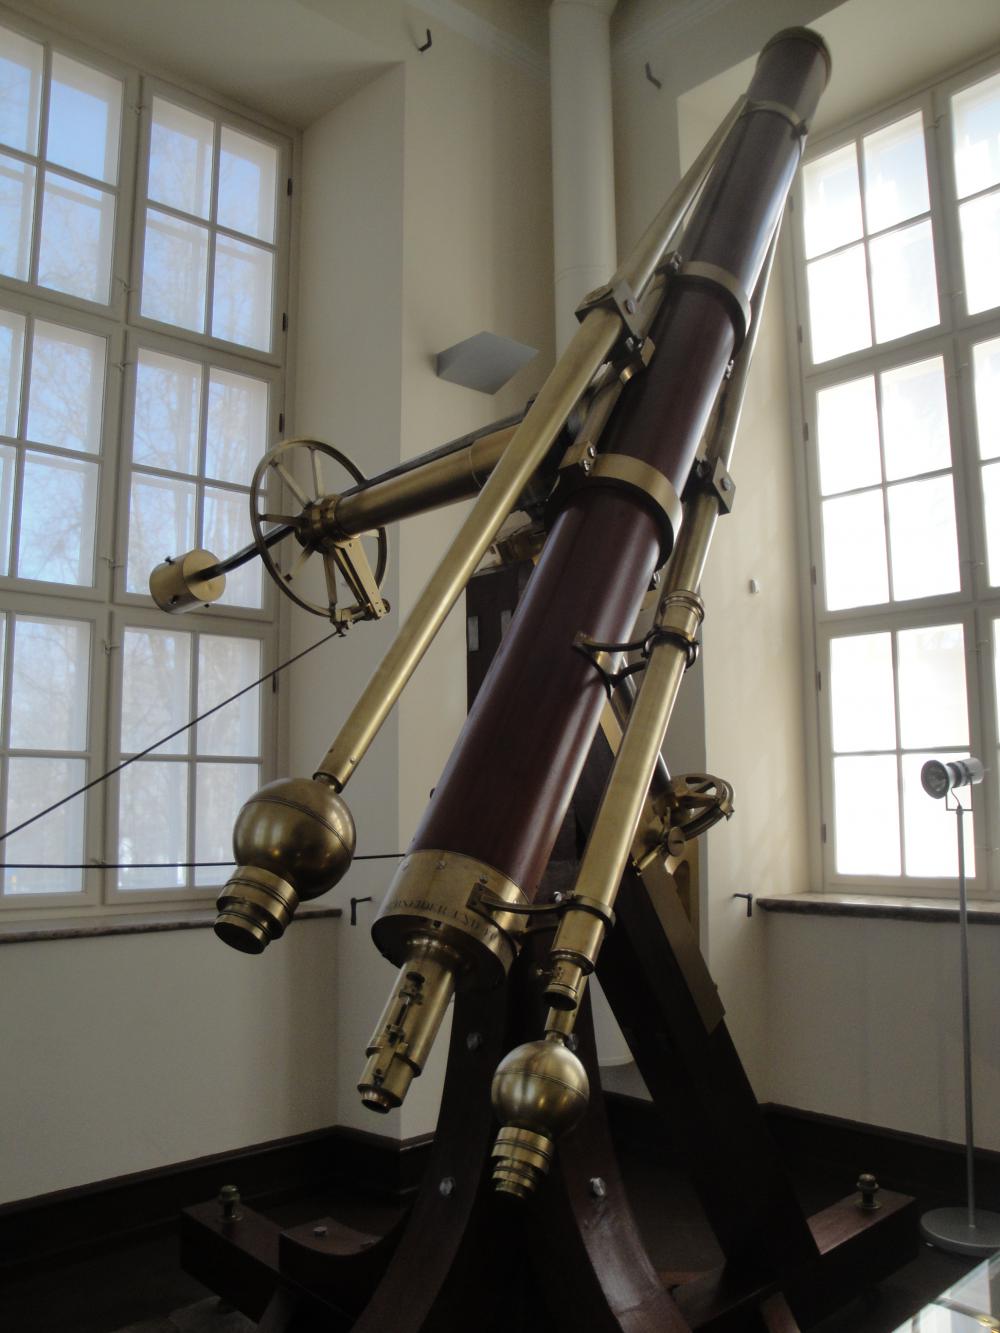 The 24-cm Fraunhofer refractor of Tartu Observator